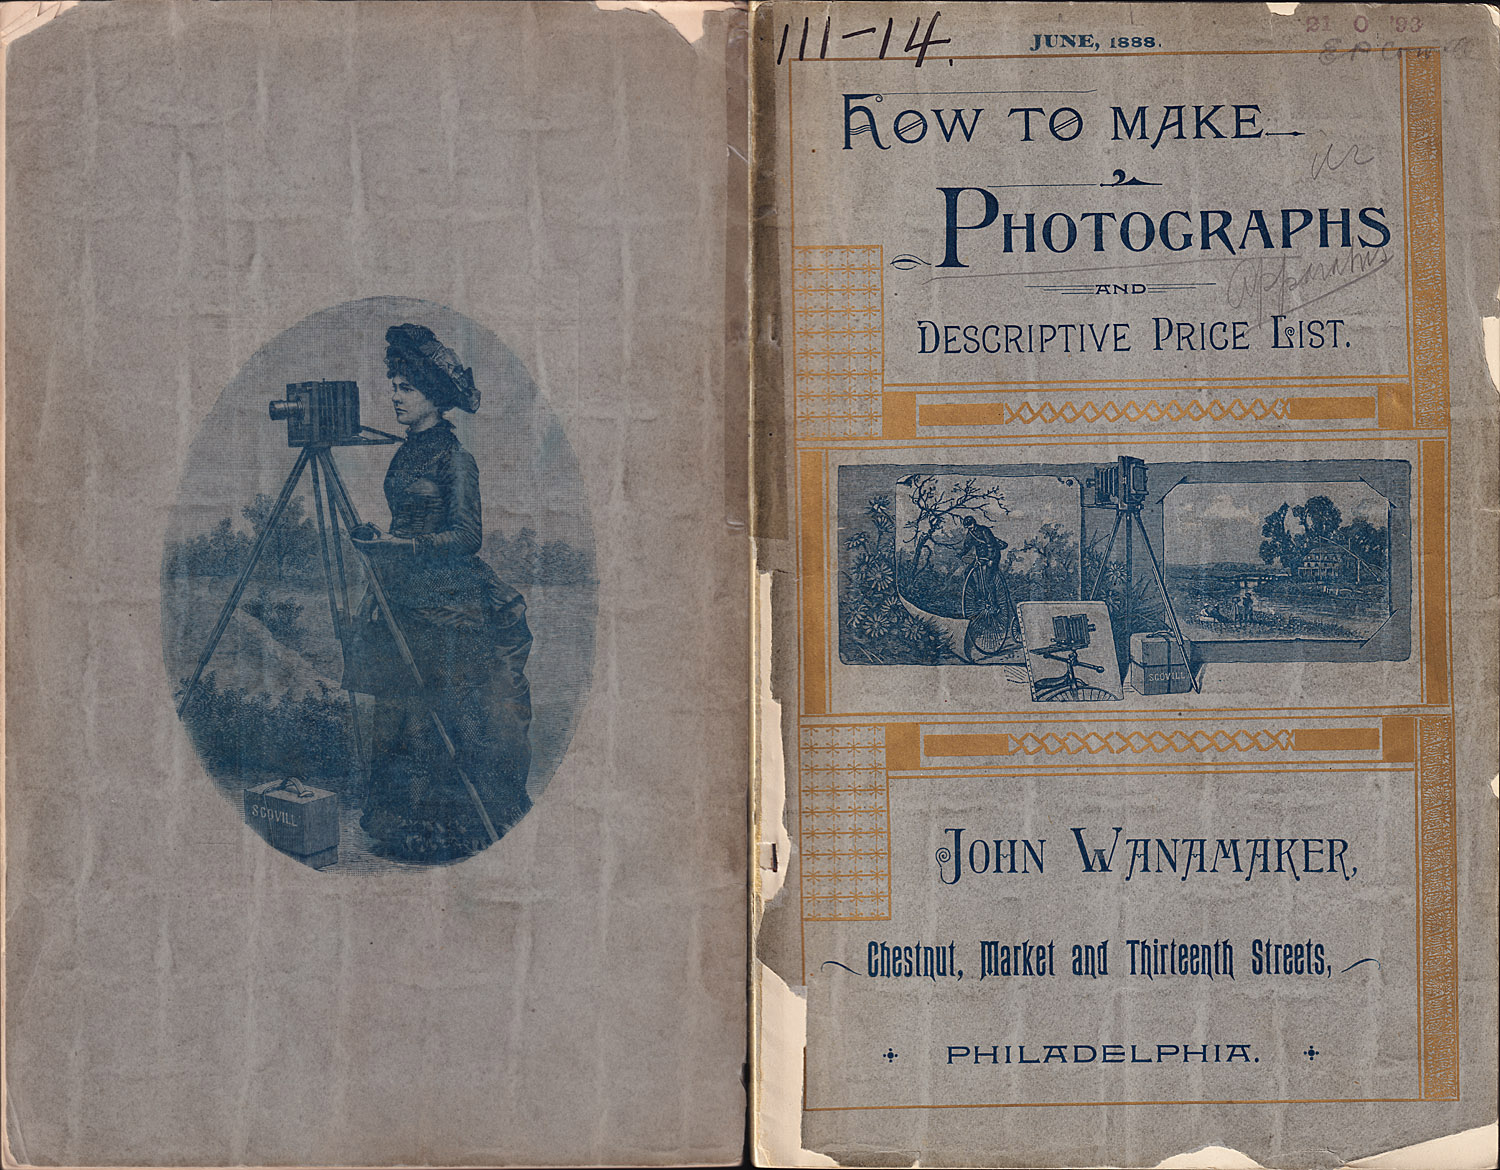 1318.scovill.jun.1888.wanamaker-covers-1500.jpg